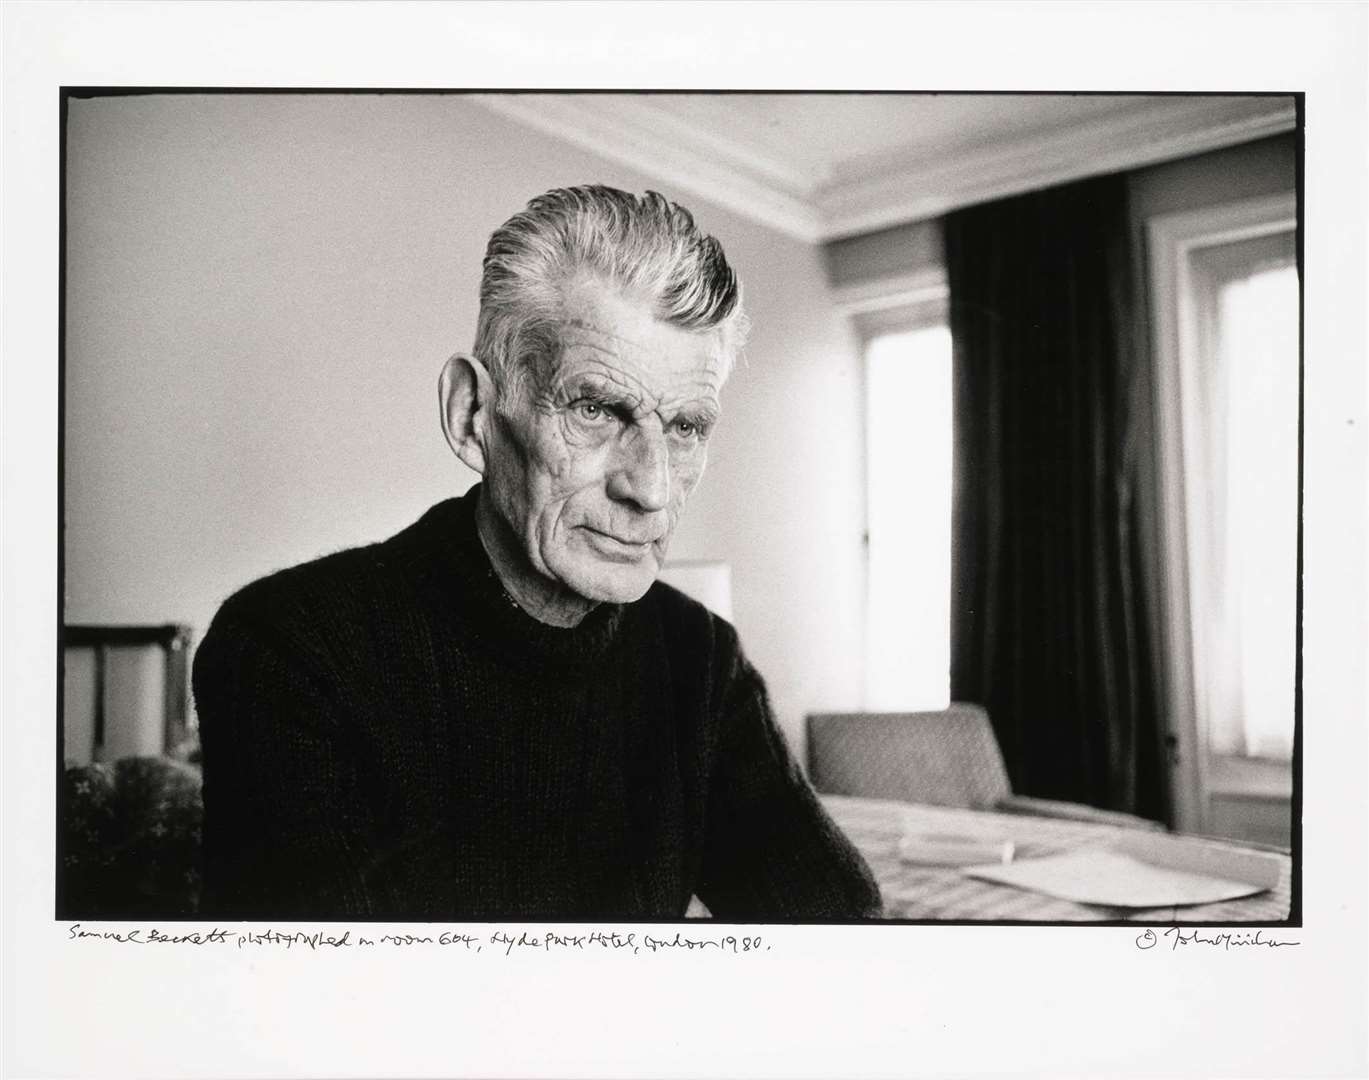 John Minihan’s photograph of playwright Samuel Beckett (Sotheby’s/PA)